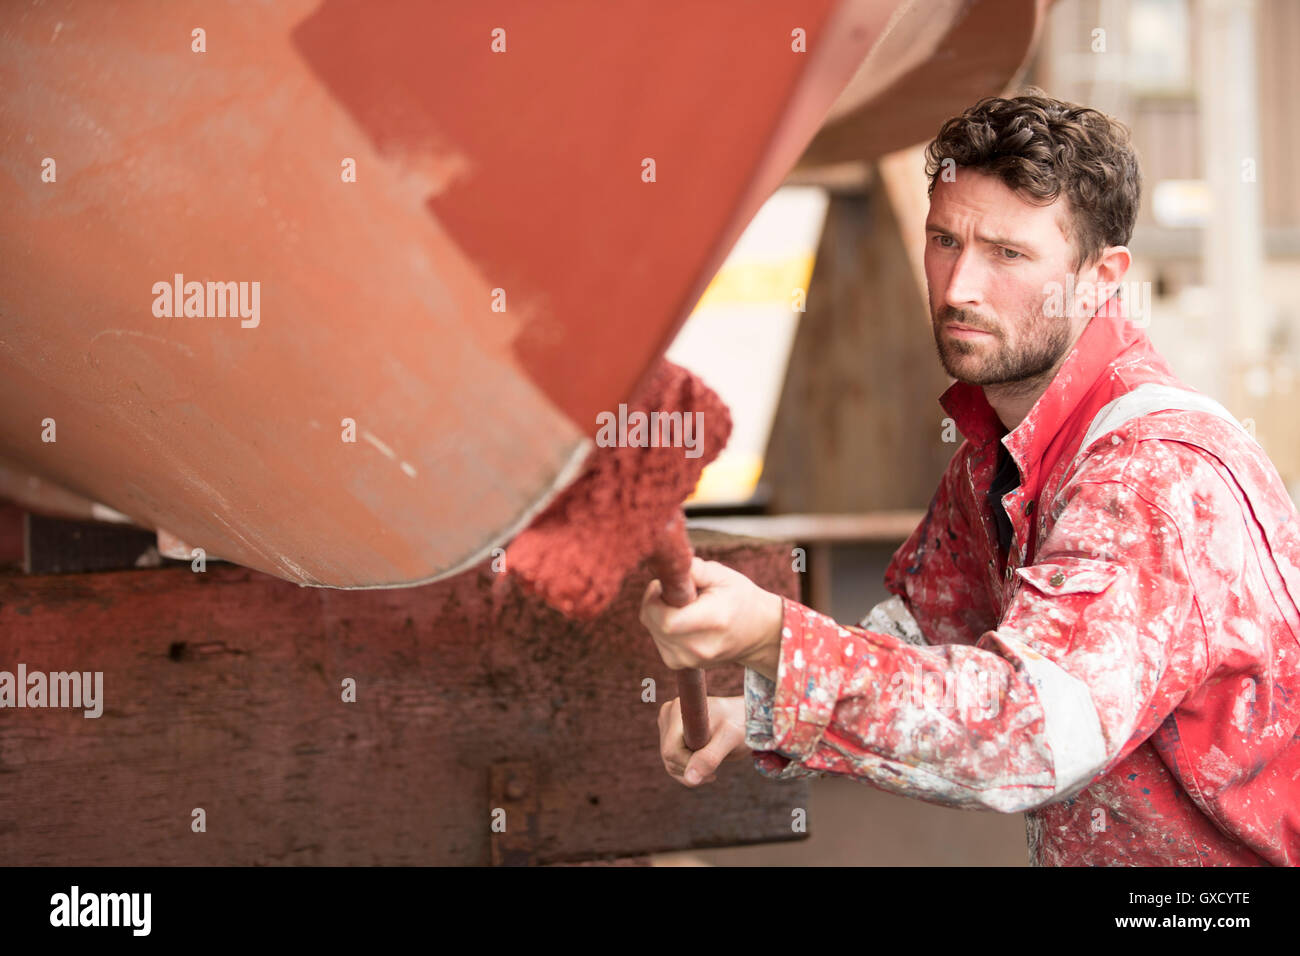 Nave maschio pittore verniciatura a rullo carena rosso nella nave cantiere pittori Foto Stock